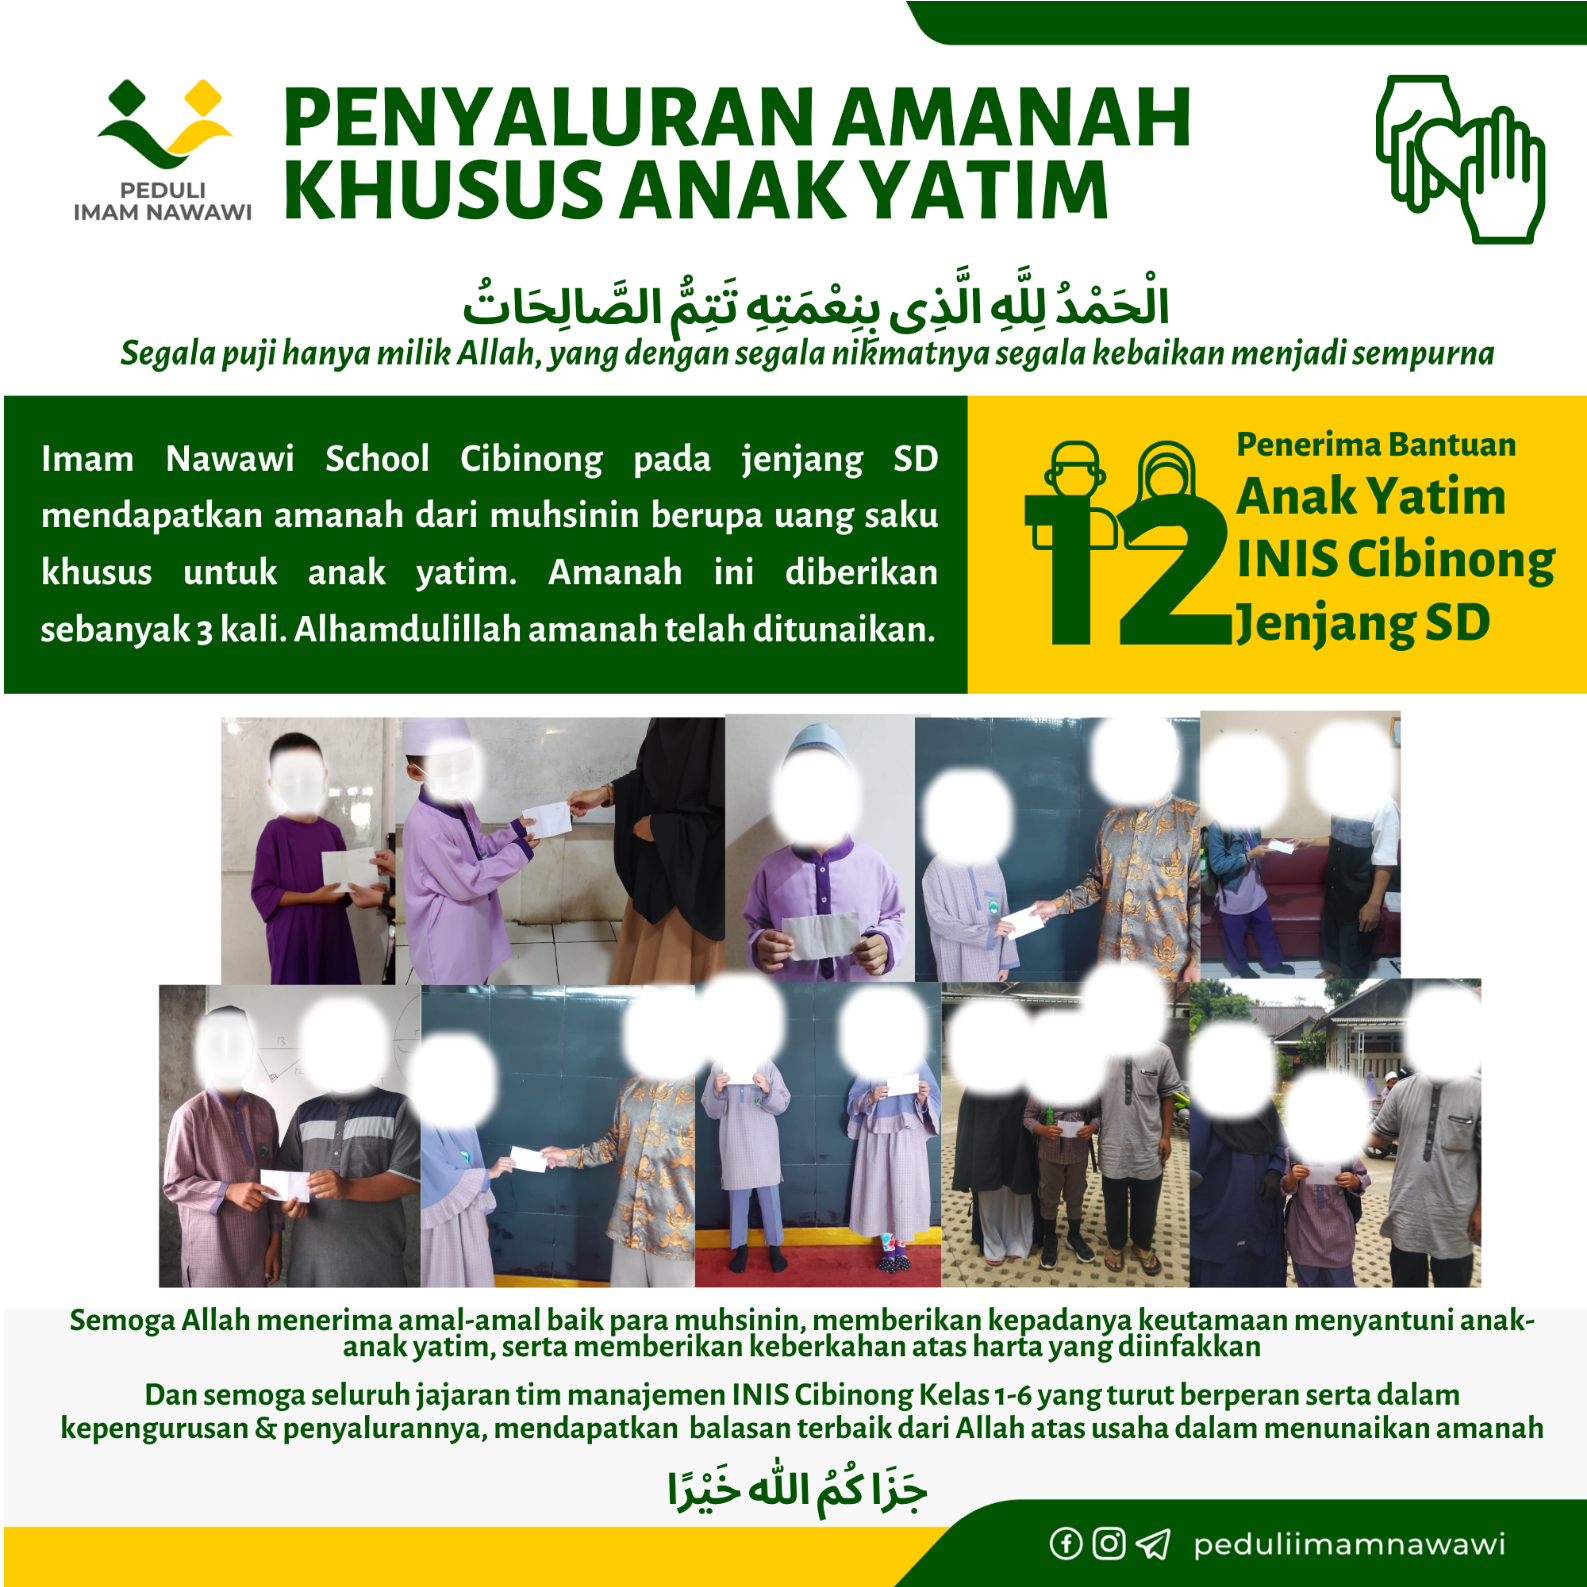 You are currently viewing Penyaluran Amanah Khusus Yatim